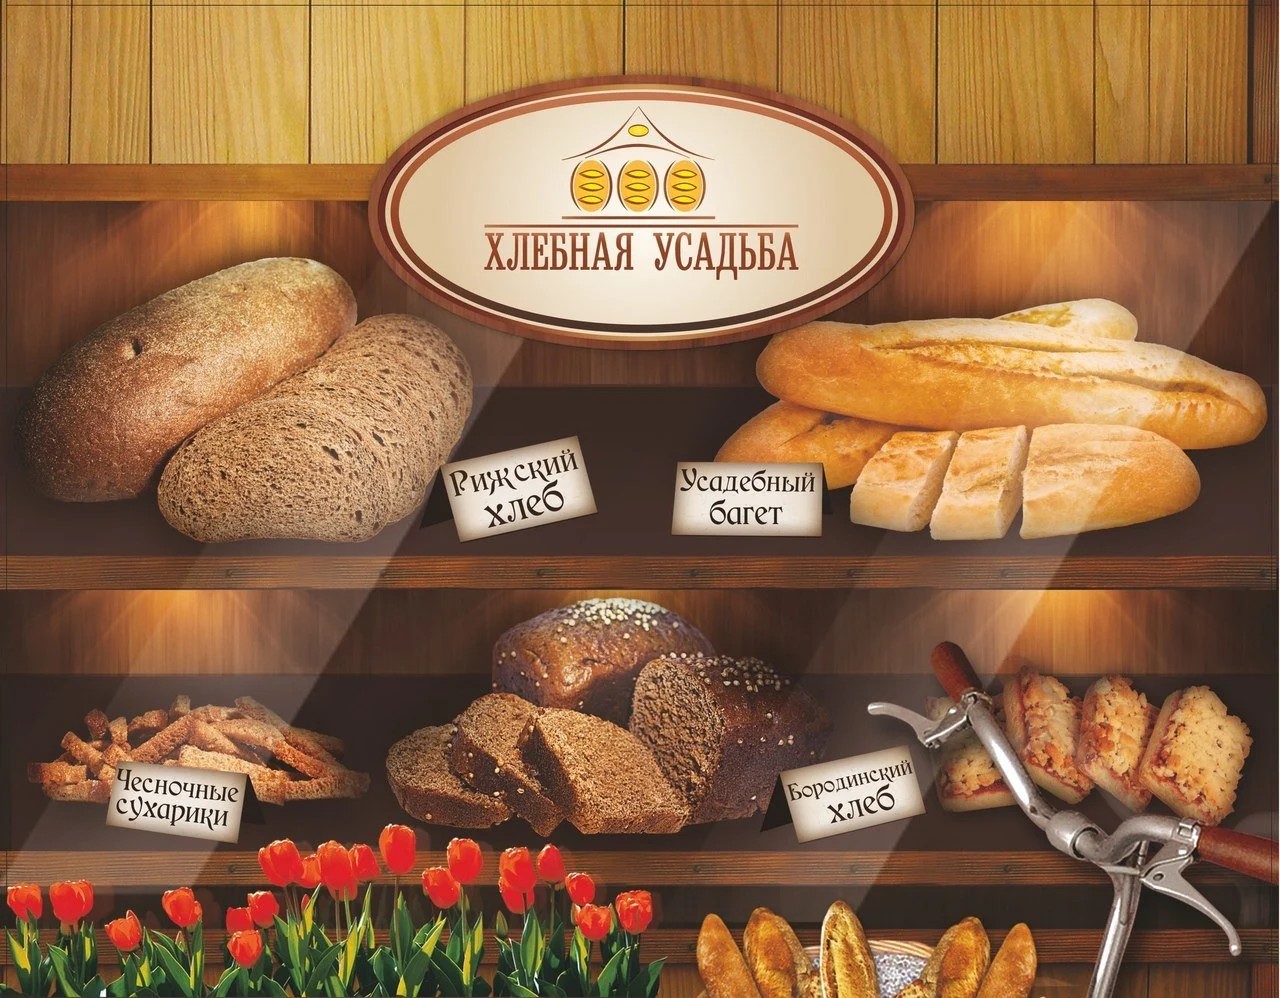 «Хлебная Усадьба»: как пекари-идеалисты меняют мир / Гид по пекарням России